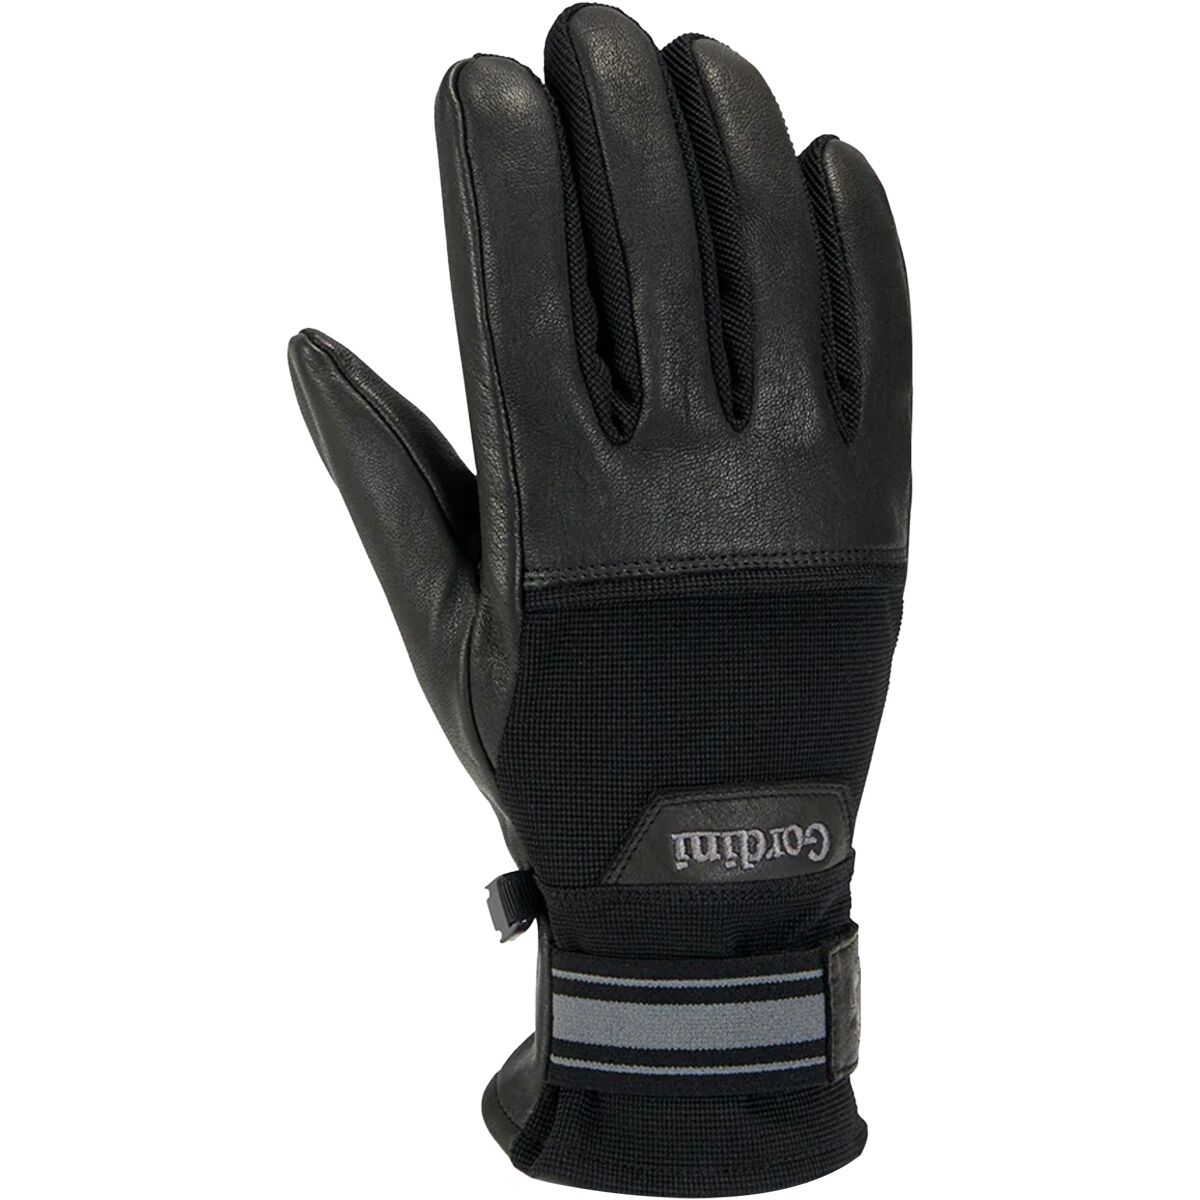 Gordini Spring Glove - Men's Black